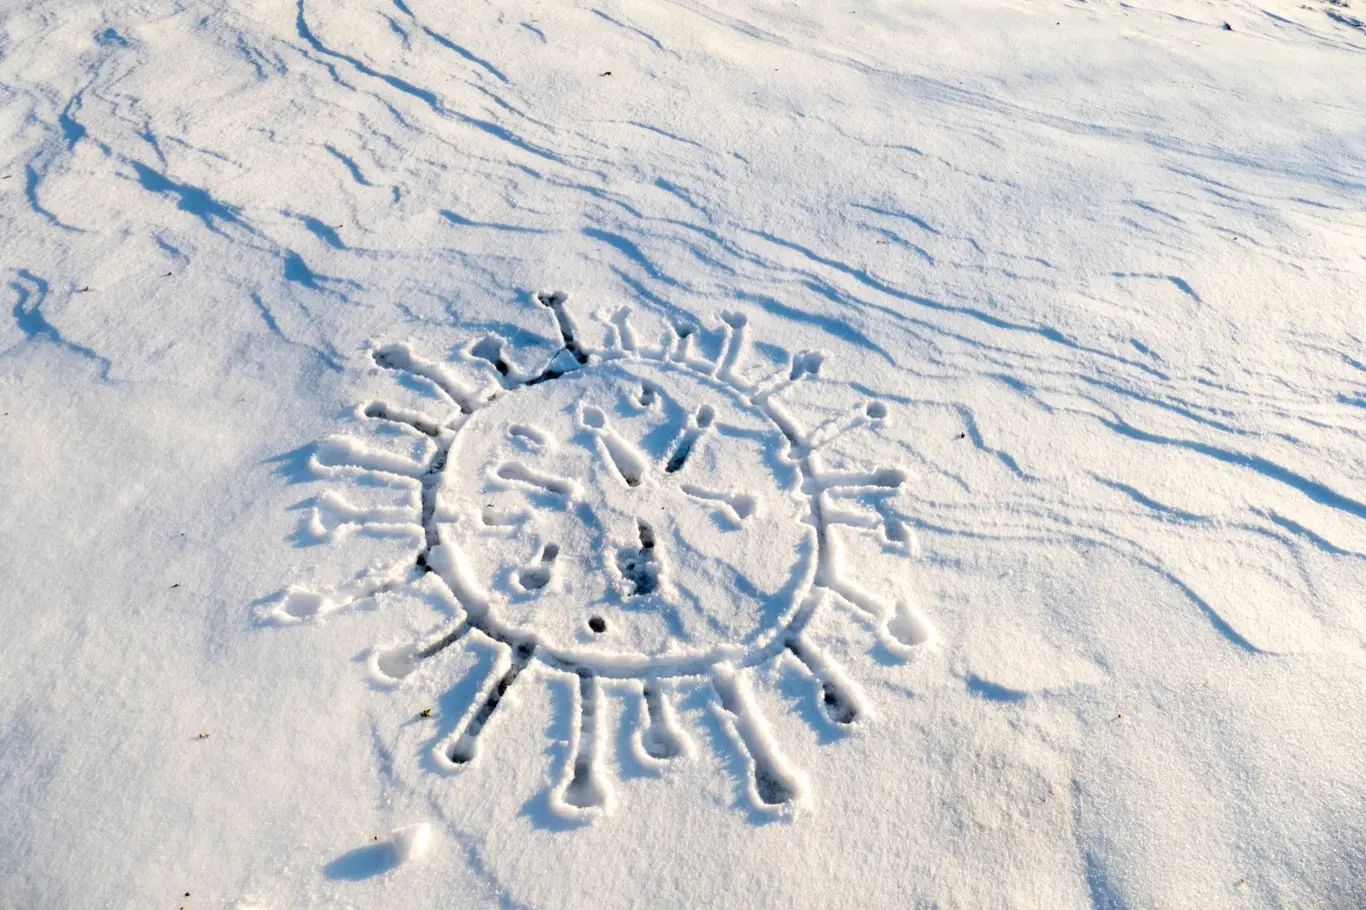 Virus by se mohl skrývat v ledu